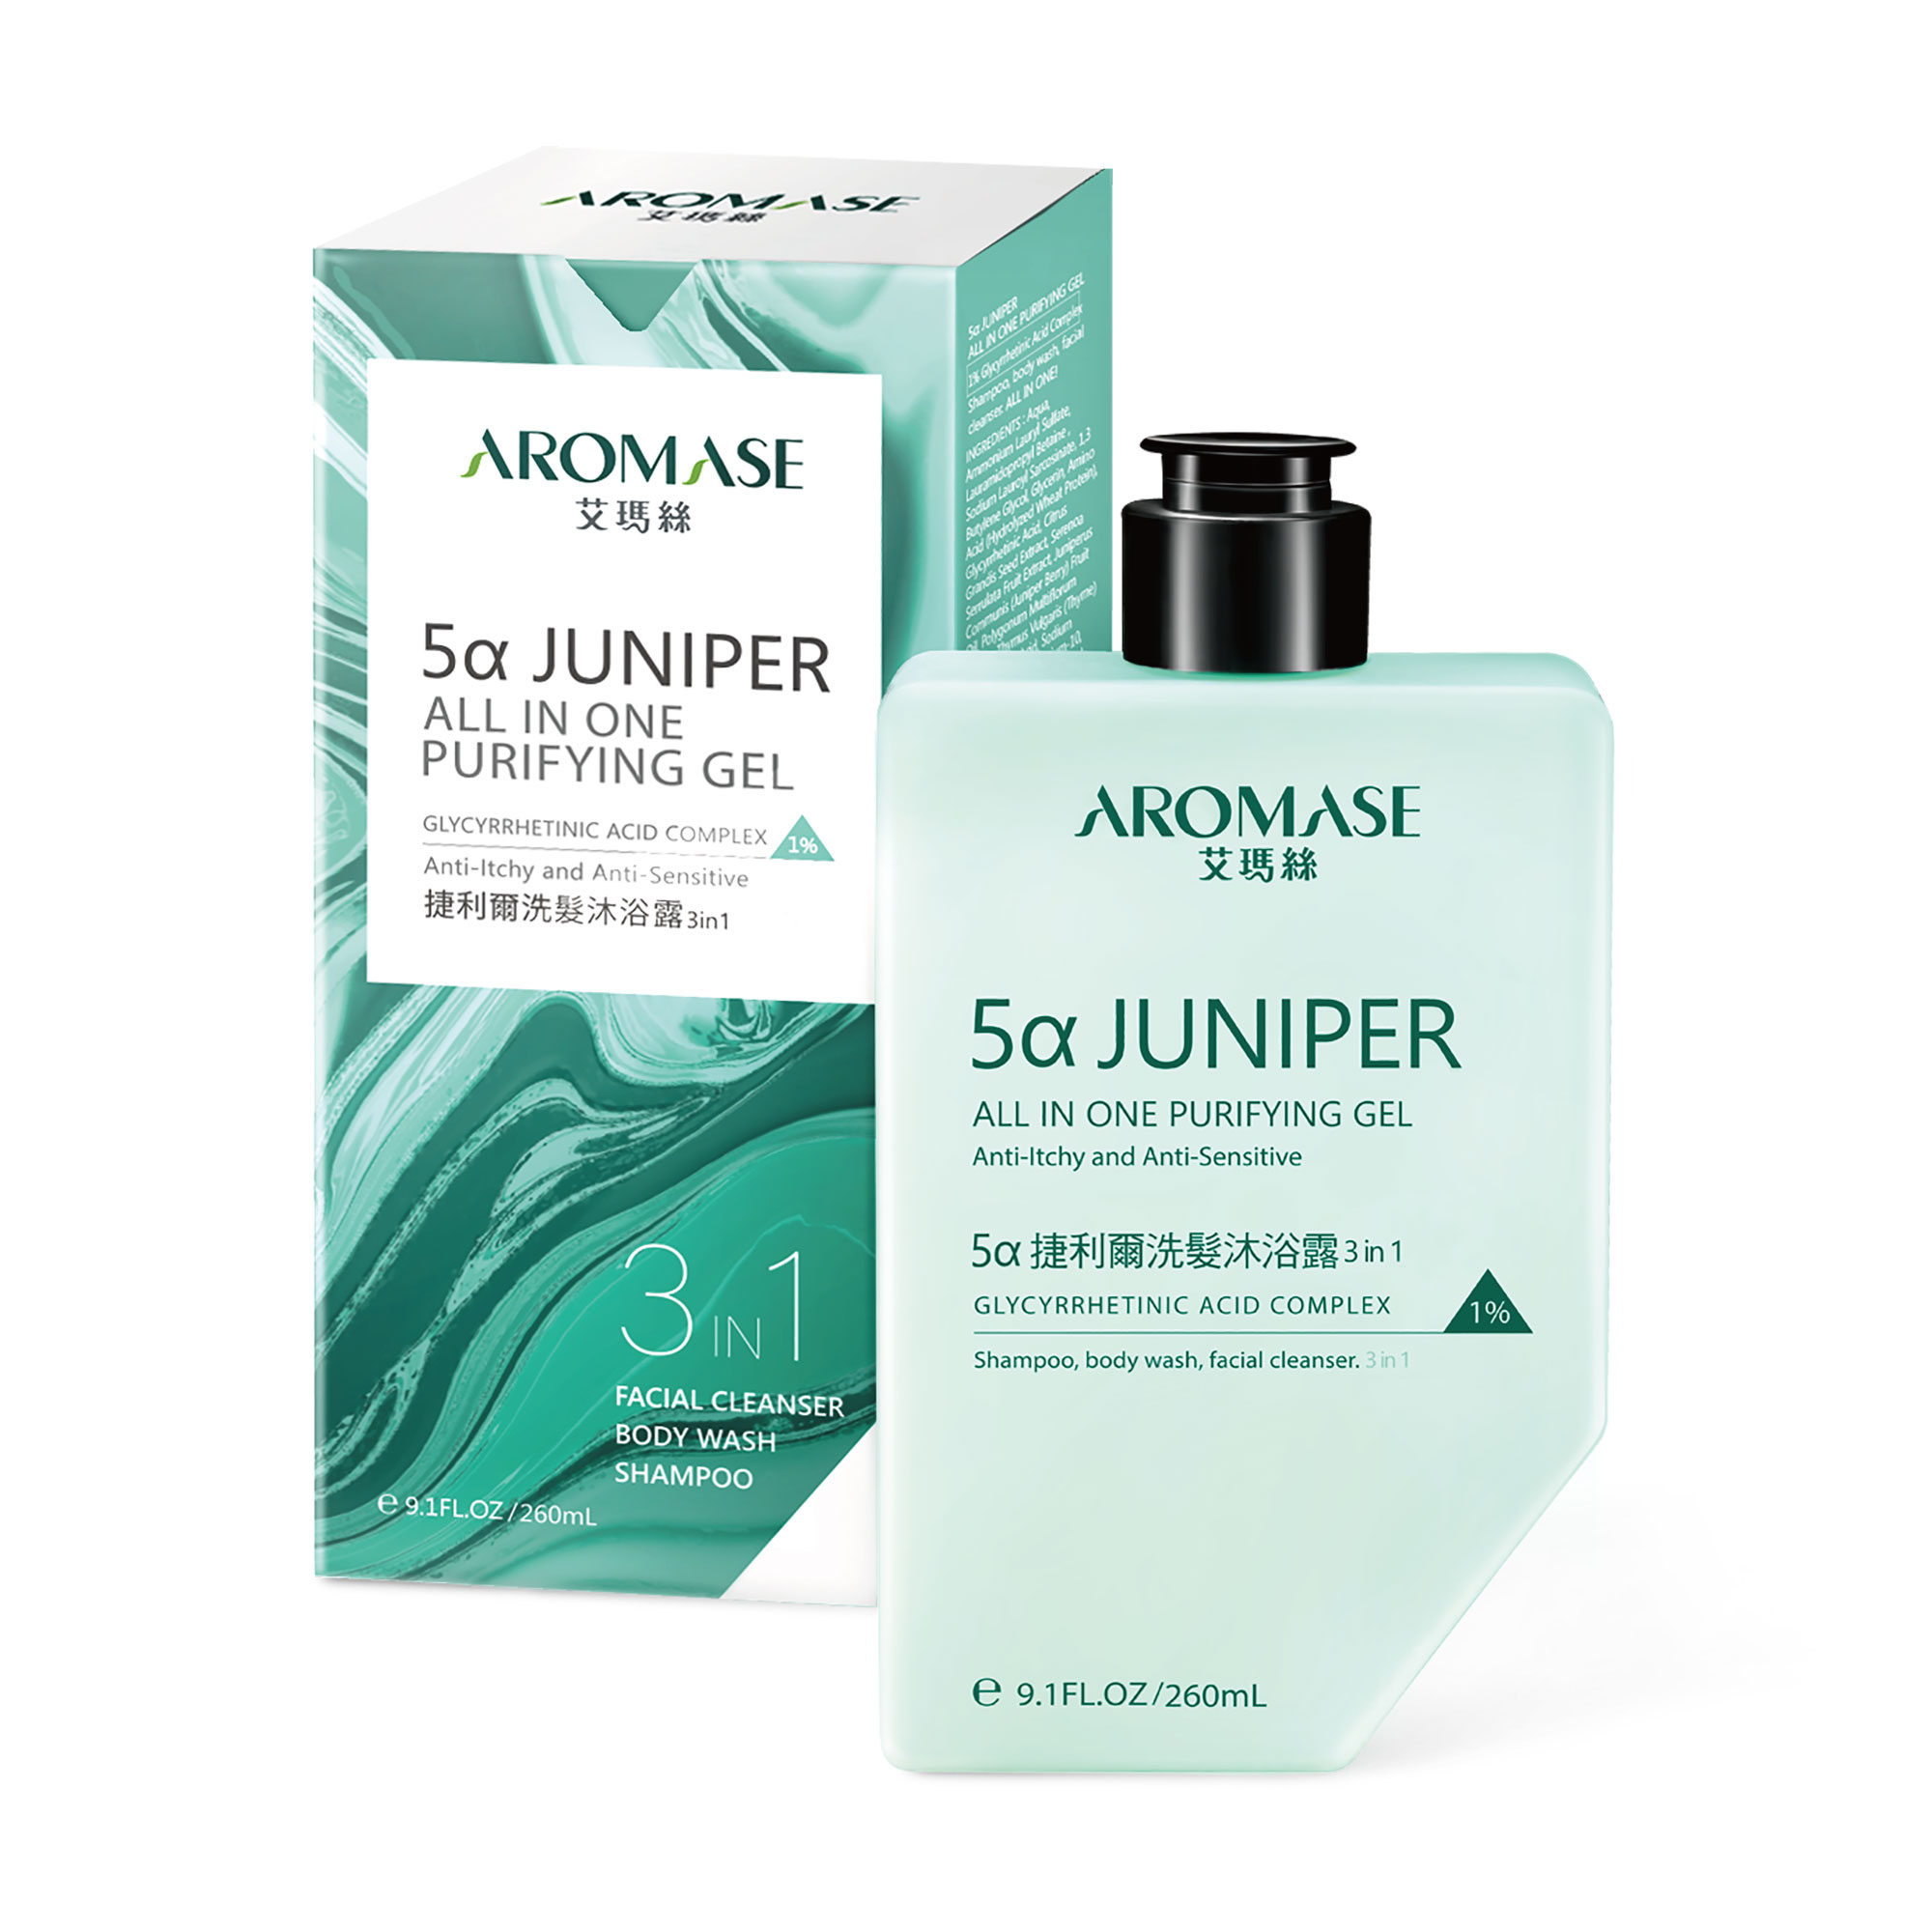 5α Juniper Head-To-Toe Shampoo & Body Wash ( for Face, Body & Scalp) / MacroHI co., Ltd